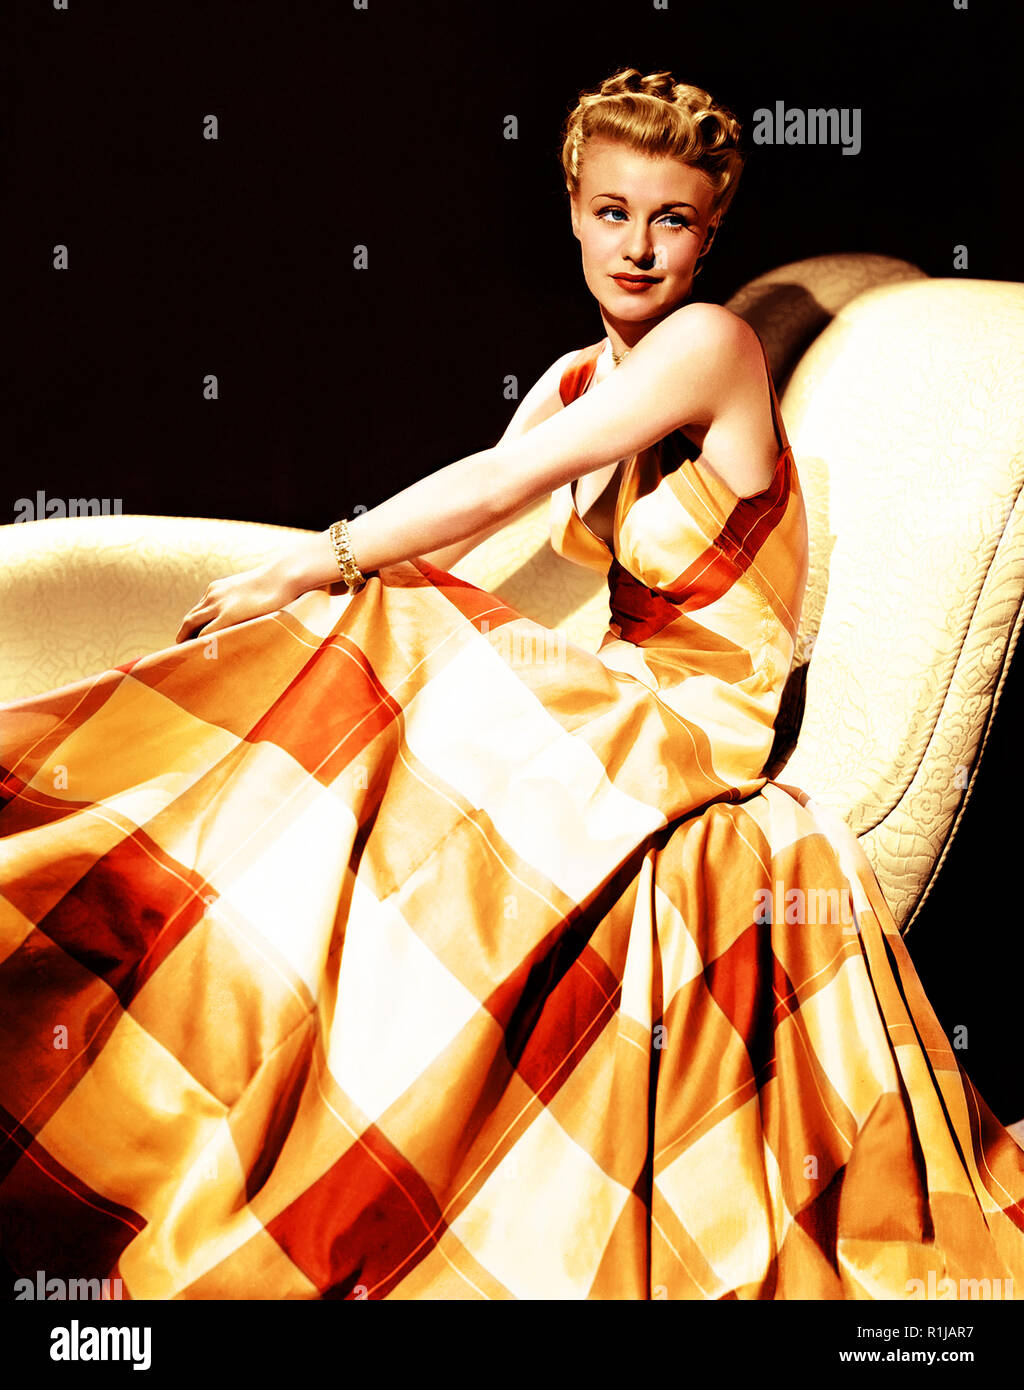 Ginger Rogers (geb. Virginia Katherine McMath; Juli 16, 1911 - April 25, 1995) war eine US-amerikanische Schauspielerin, Tänzerin und Sängerin. Sie ist am besten bekannt für ihre Hauptrolle in Kitty Foyle (1940). Sie hat in der Musik filme RKO's (mit Fred Astaire zusammen) auf der Bühne, Radio und Fernsehen, während viel des 20. Jahrhunderts durchgeführt. Quelle: Hollywood Foto Archiv/MediaPunch Stockfoto